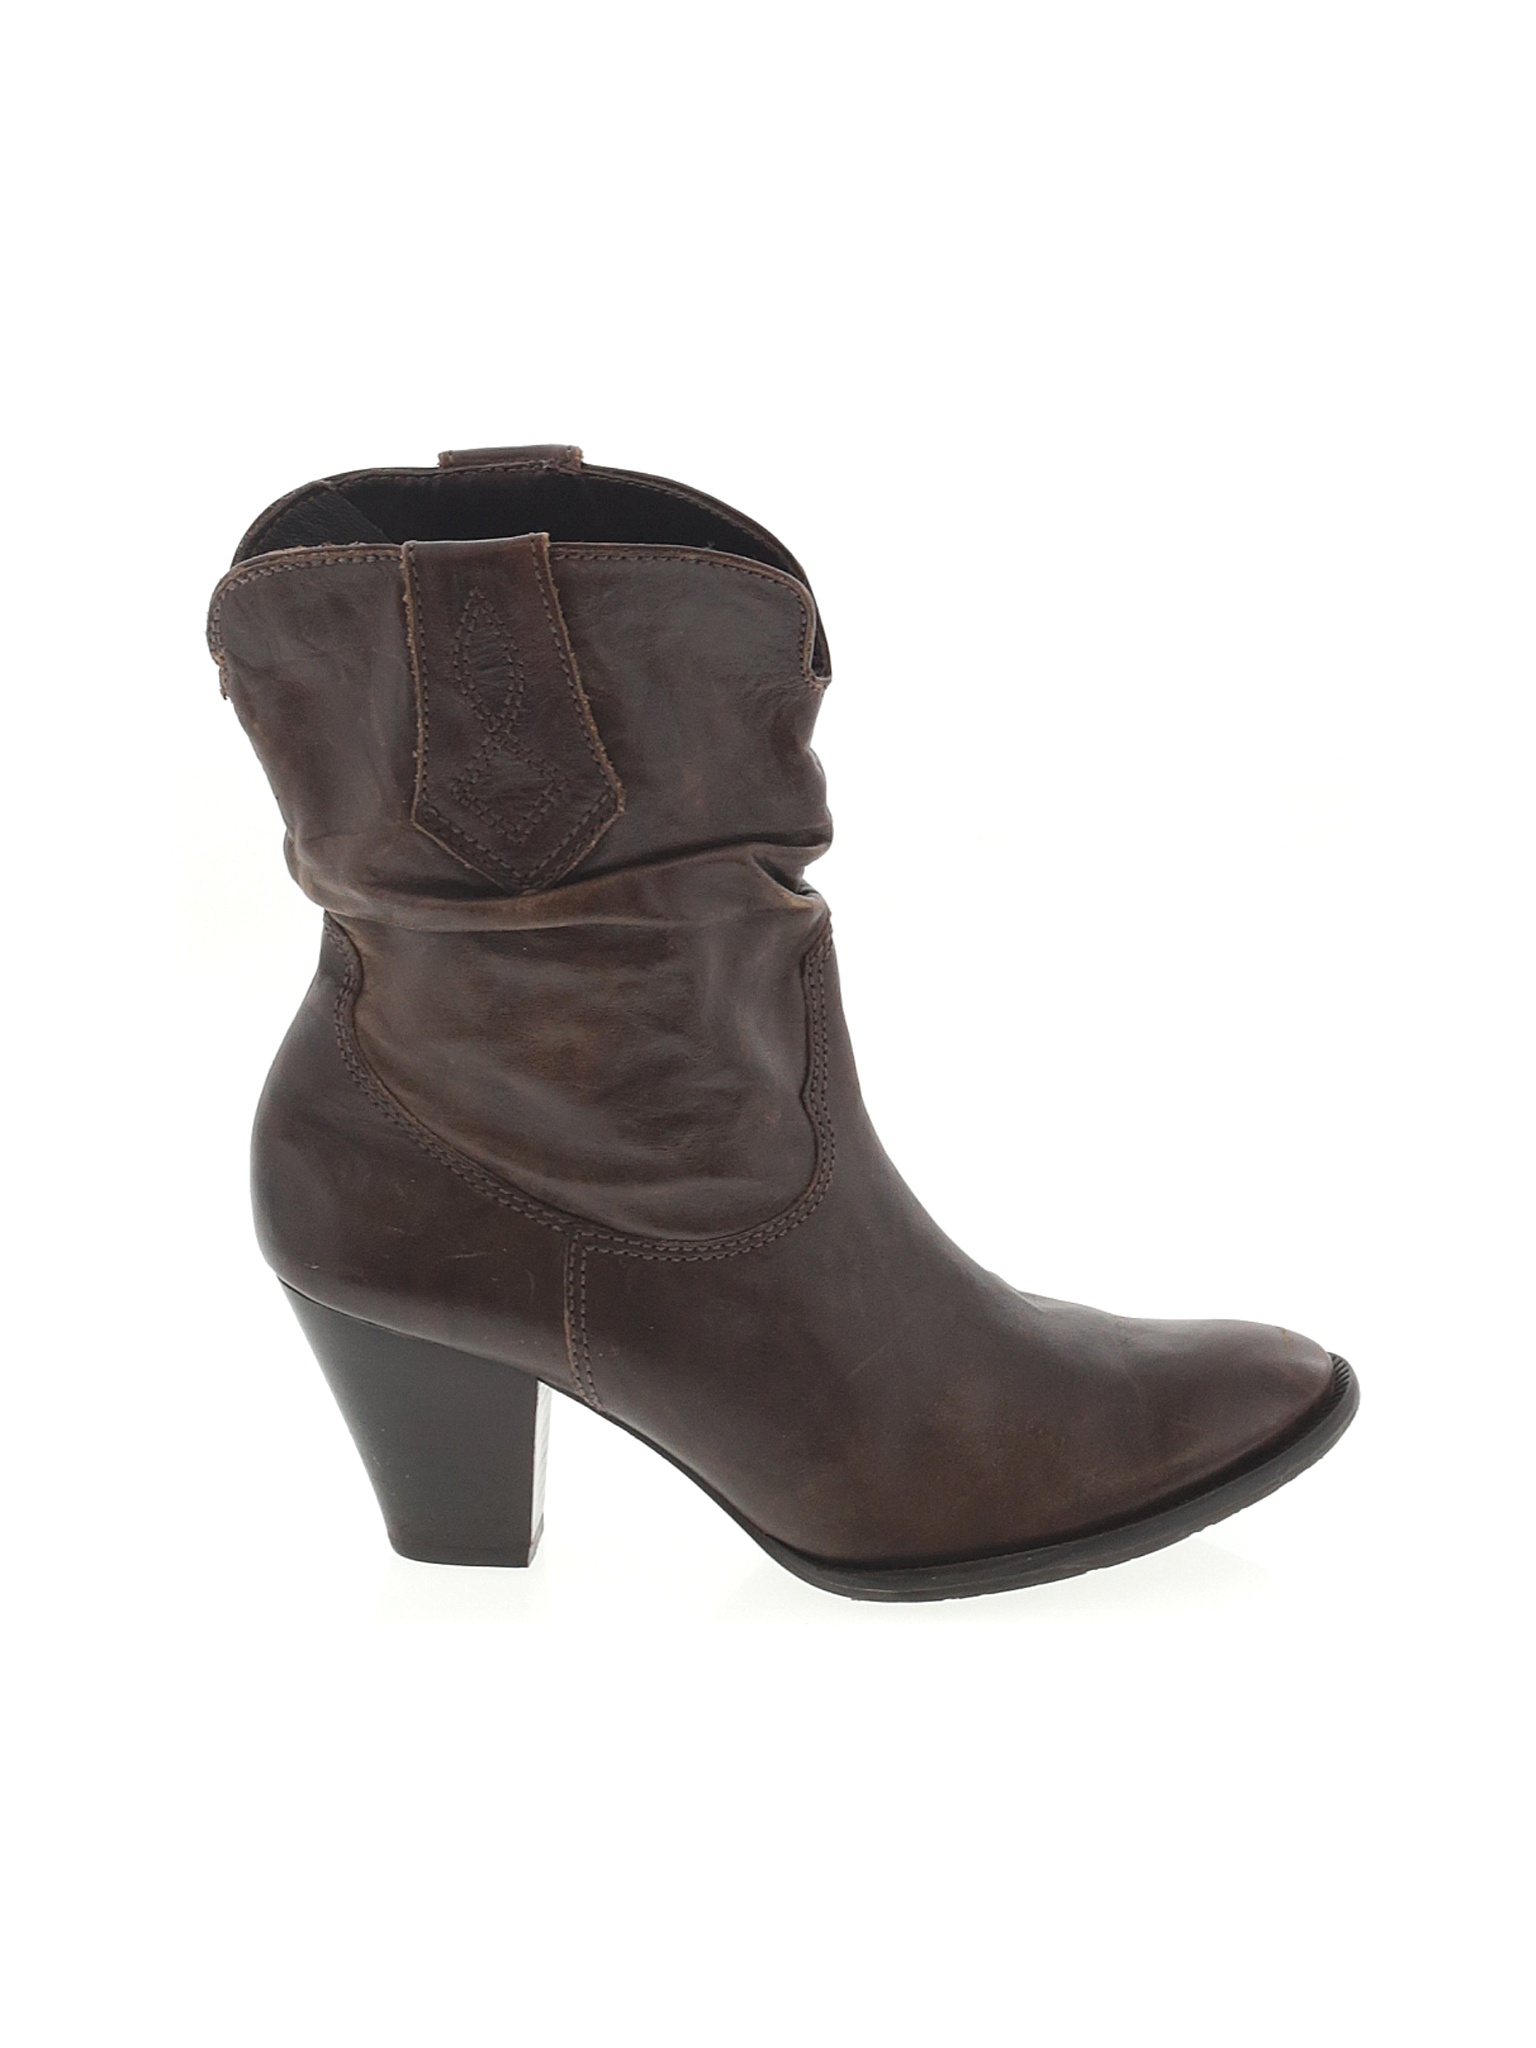 Gianni Bini Women Brown Boots US 6.5 | eBay